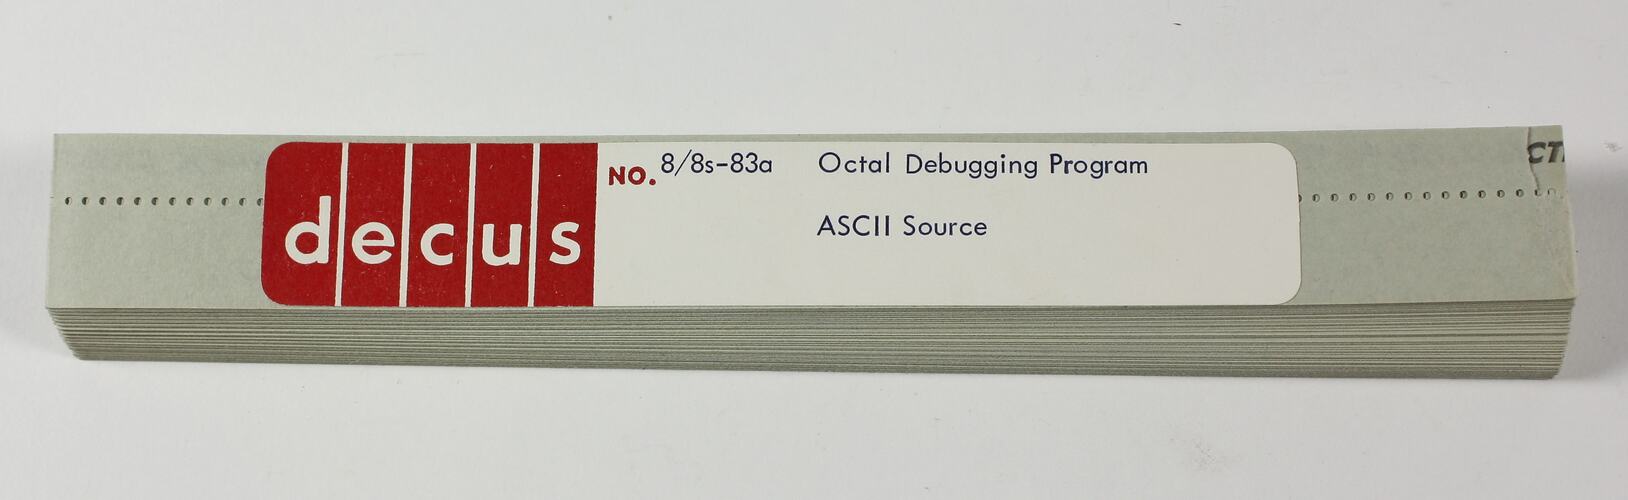 Paper Tape - DECUS, '8/8s-83a Octal Debugging Program, ASCII Source'